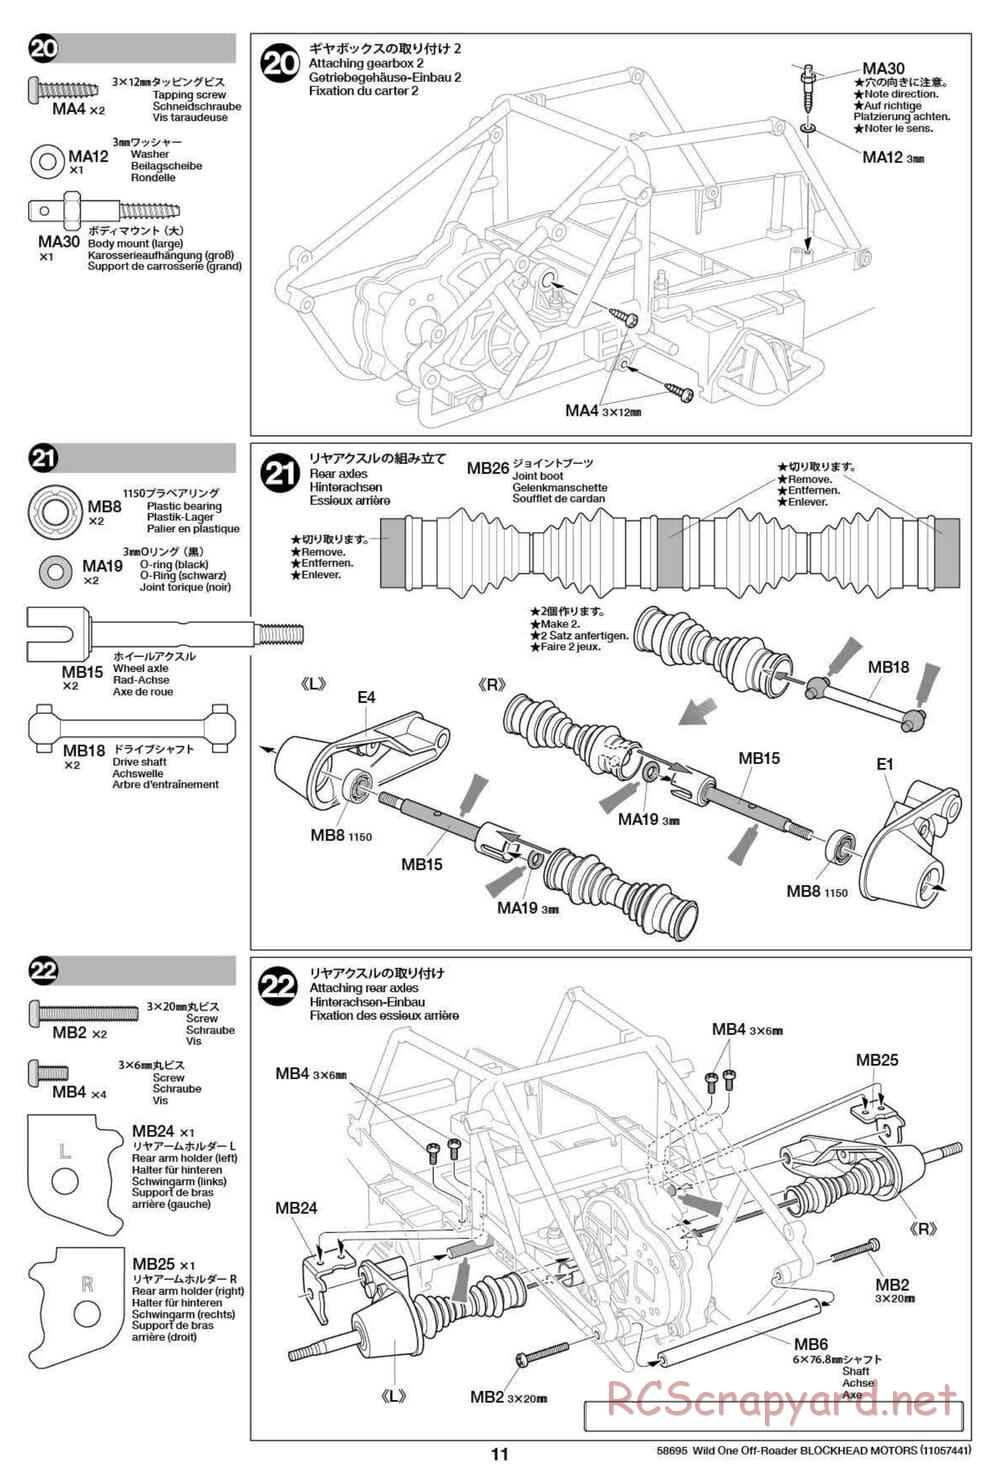 Tamiya - Wild One Off Roader Blockhead Motors - FAV Chassis - Manual - Page 11